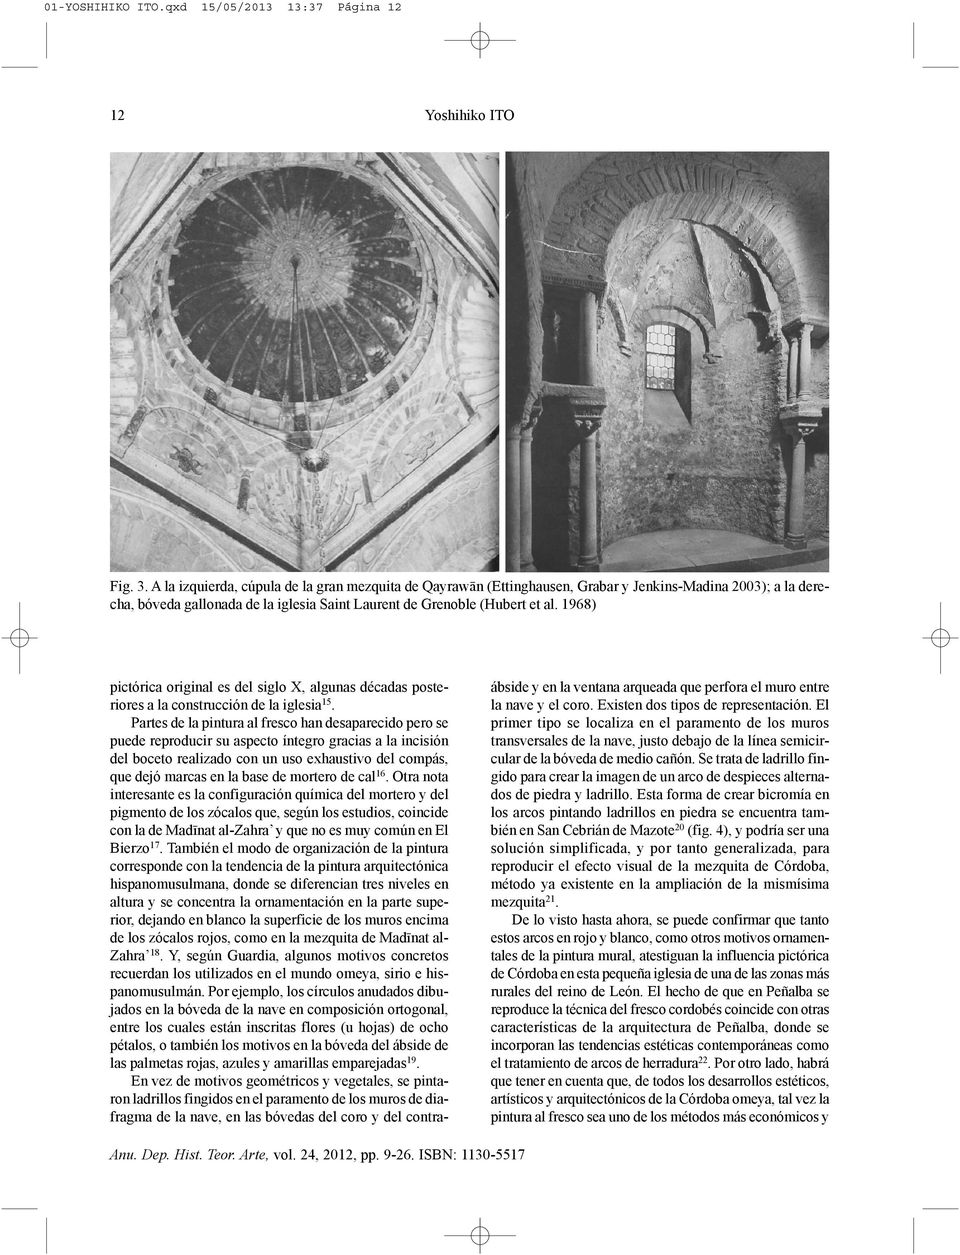 1968) pictórica original es del siglo X, algunas décadas posteriores a la construcción de la iglesia15.